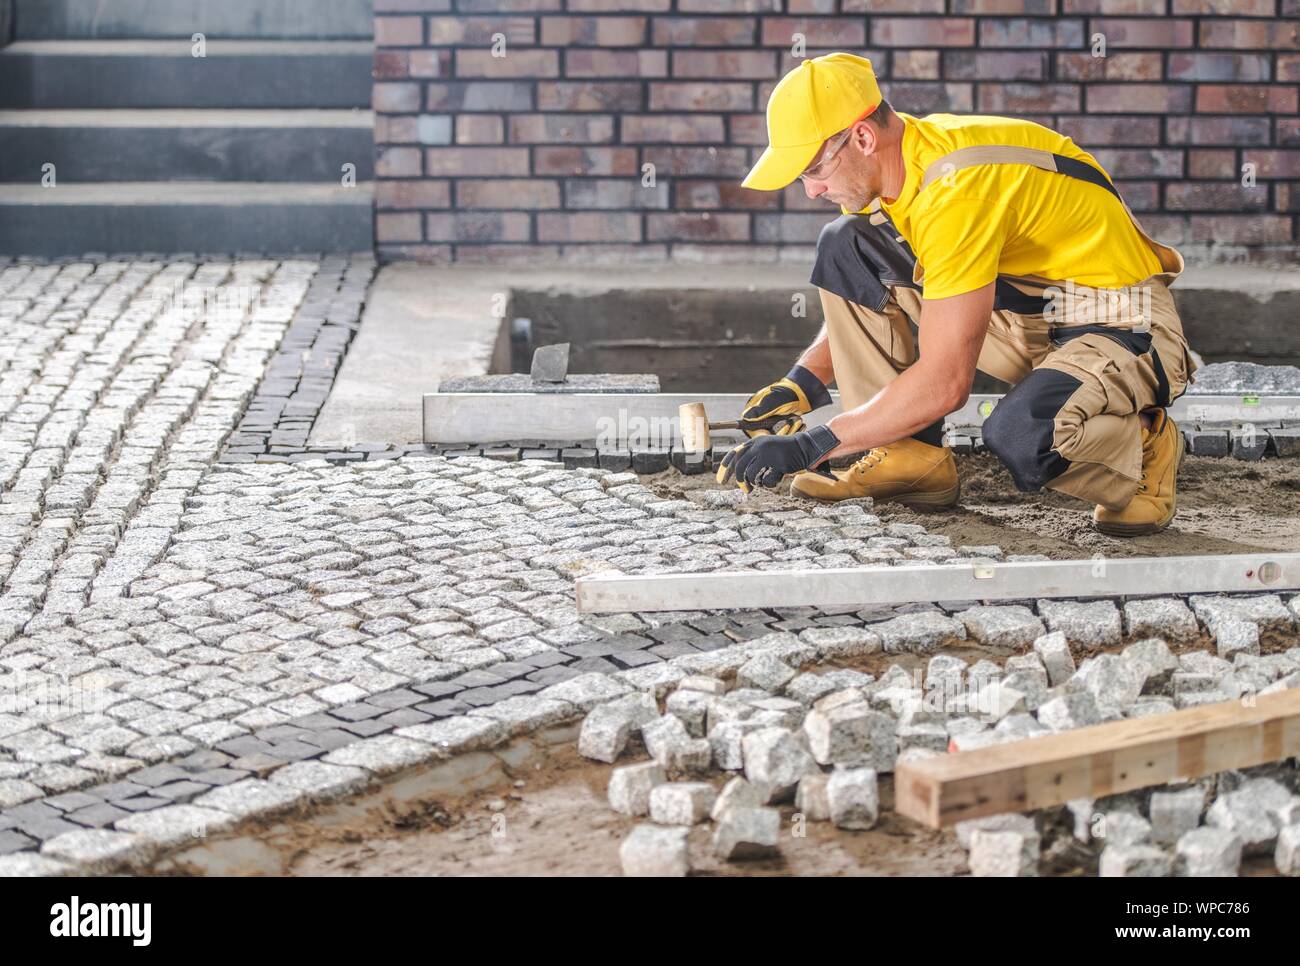 Professionelle kaukasischen Arbeiter Gebäude Granit gepflastert Hardstanding Garten Weg. Industrielle Thema. Stockfoto